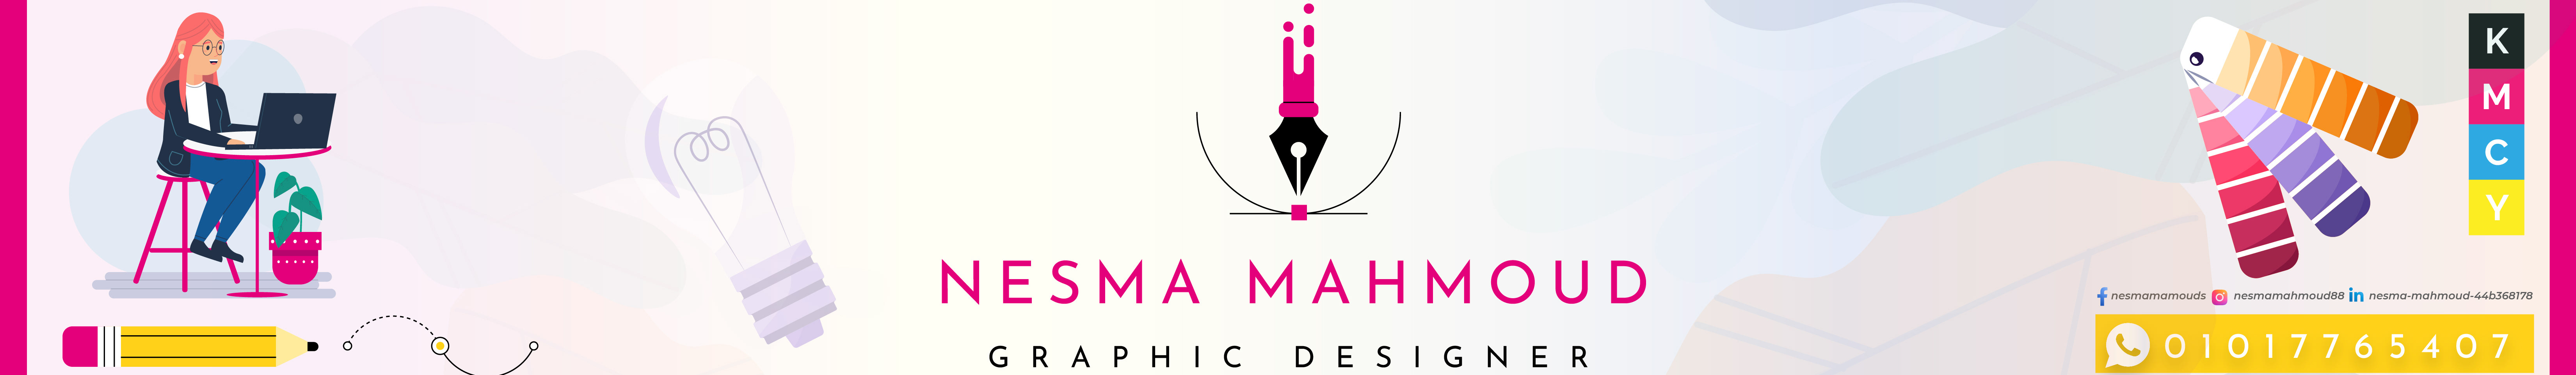 Banner del profilo di Nessma Mahmoud